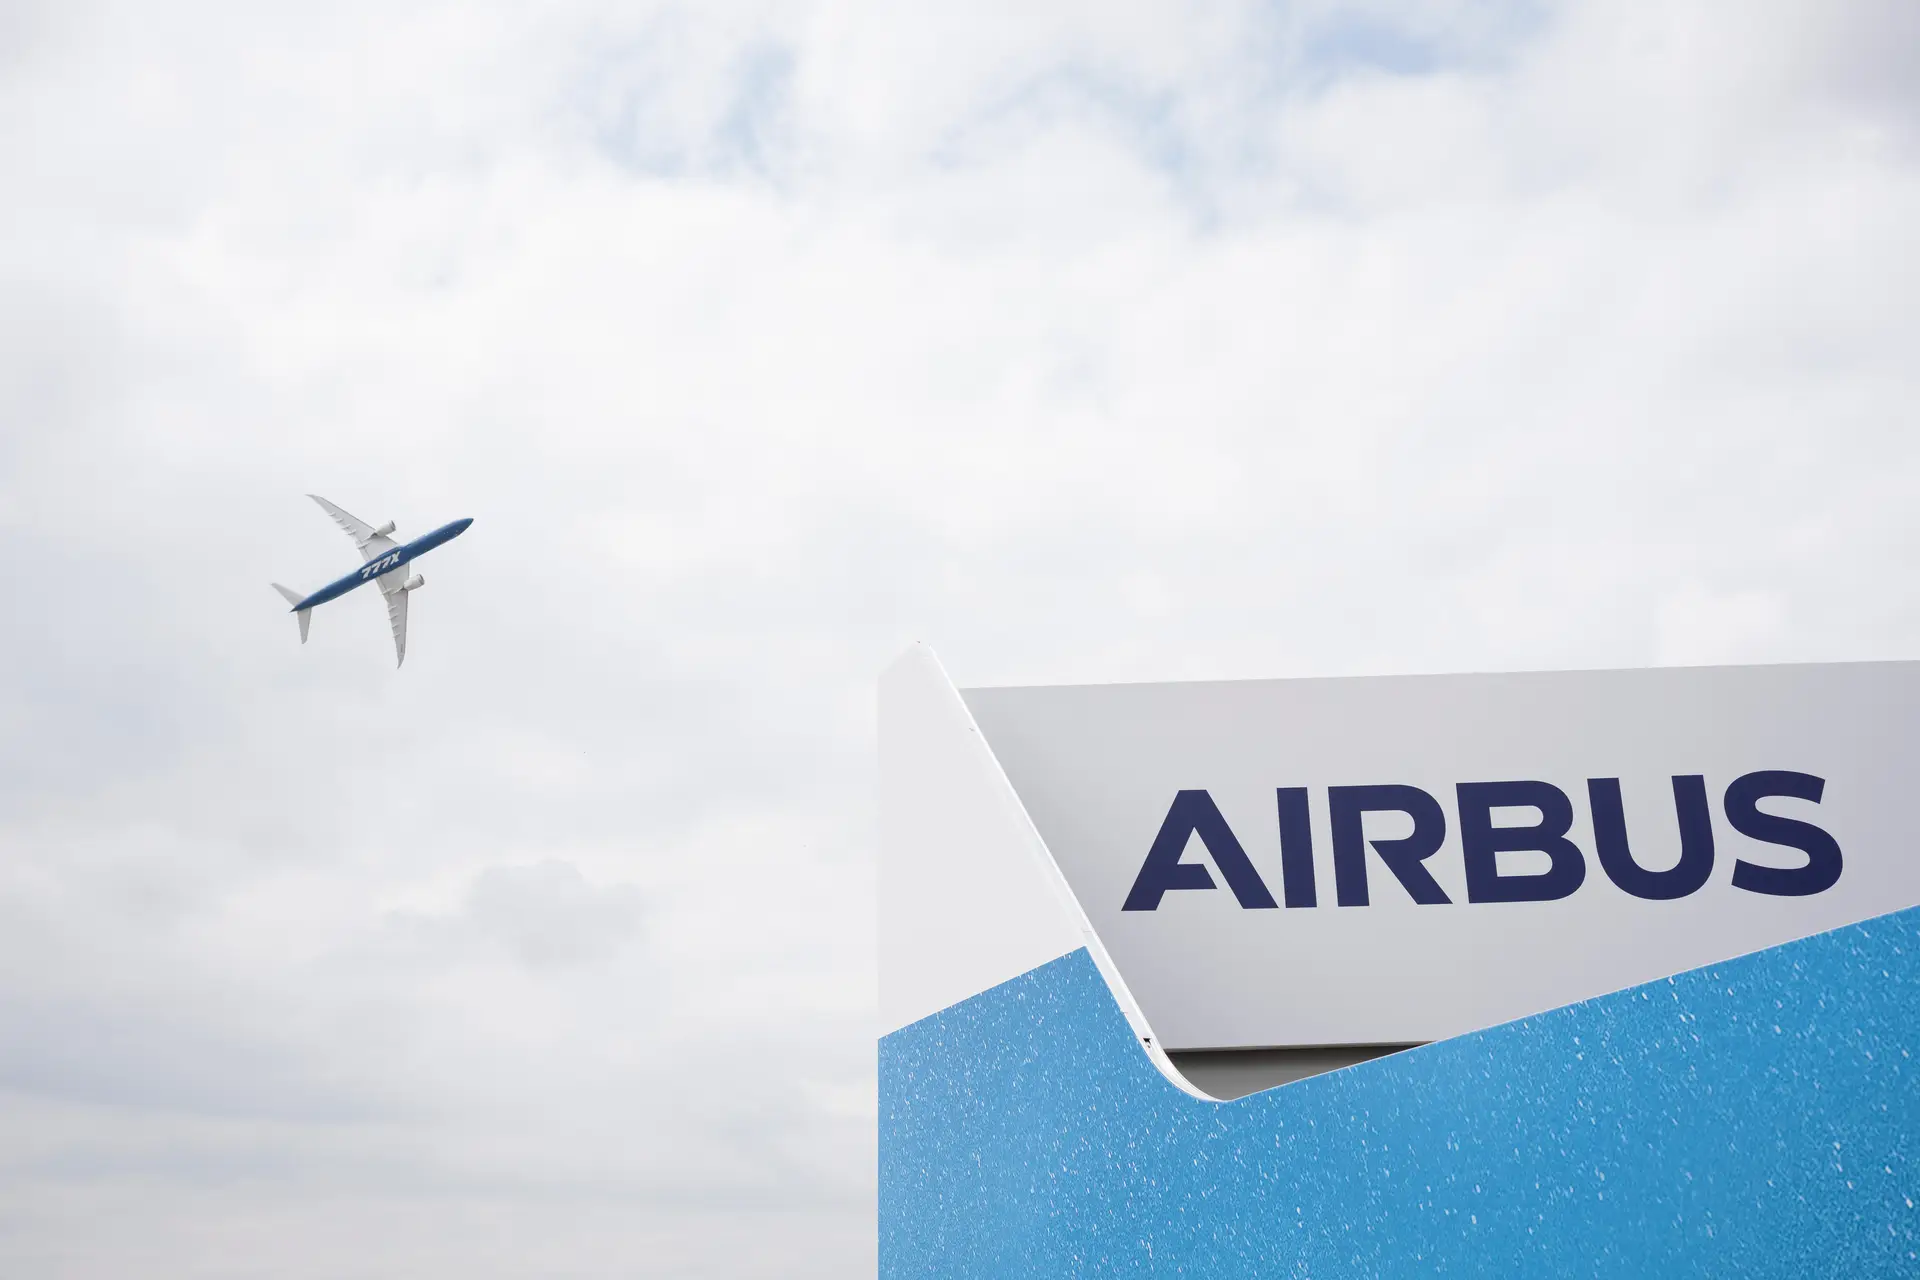 Novo escritório da Airbus em Portugal prevê criar até 100 empregos